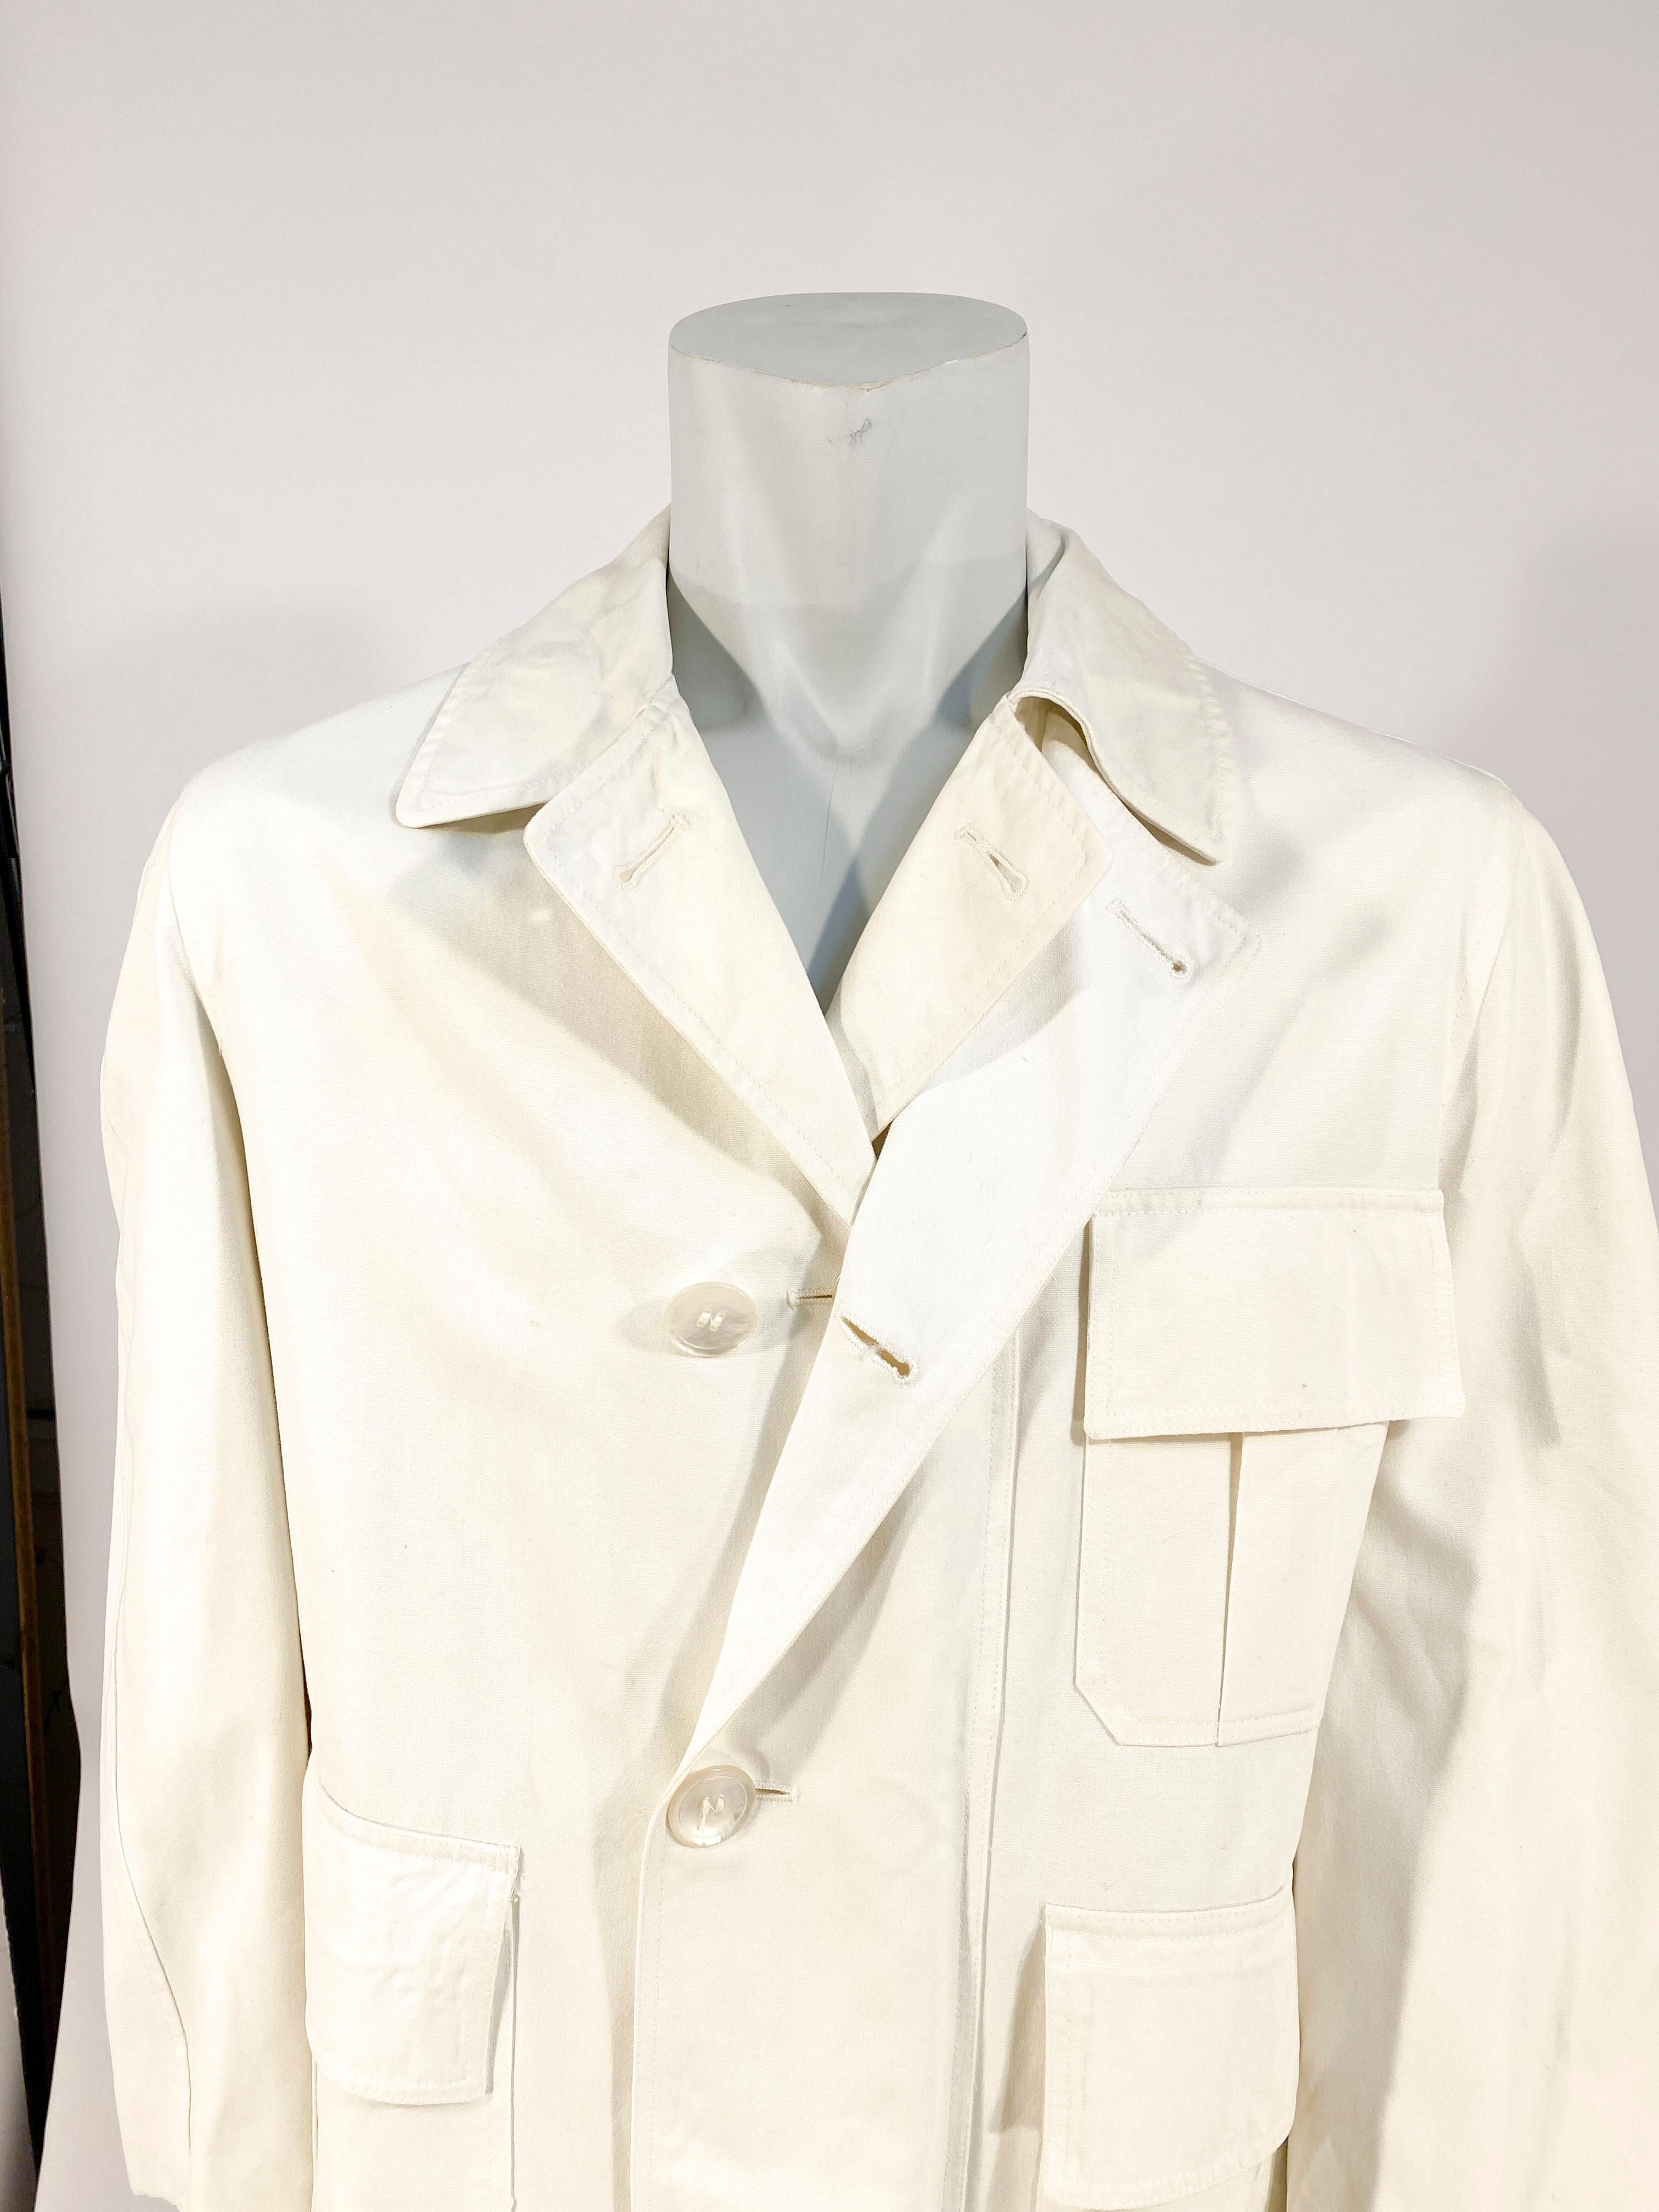 Weißer Canvas-Trenchcoat von Bill Blass aus den 1970er Jahren mit funktioneller Regenklappe mit Knöpfen, vollem Futter und großen Taschen.